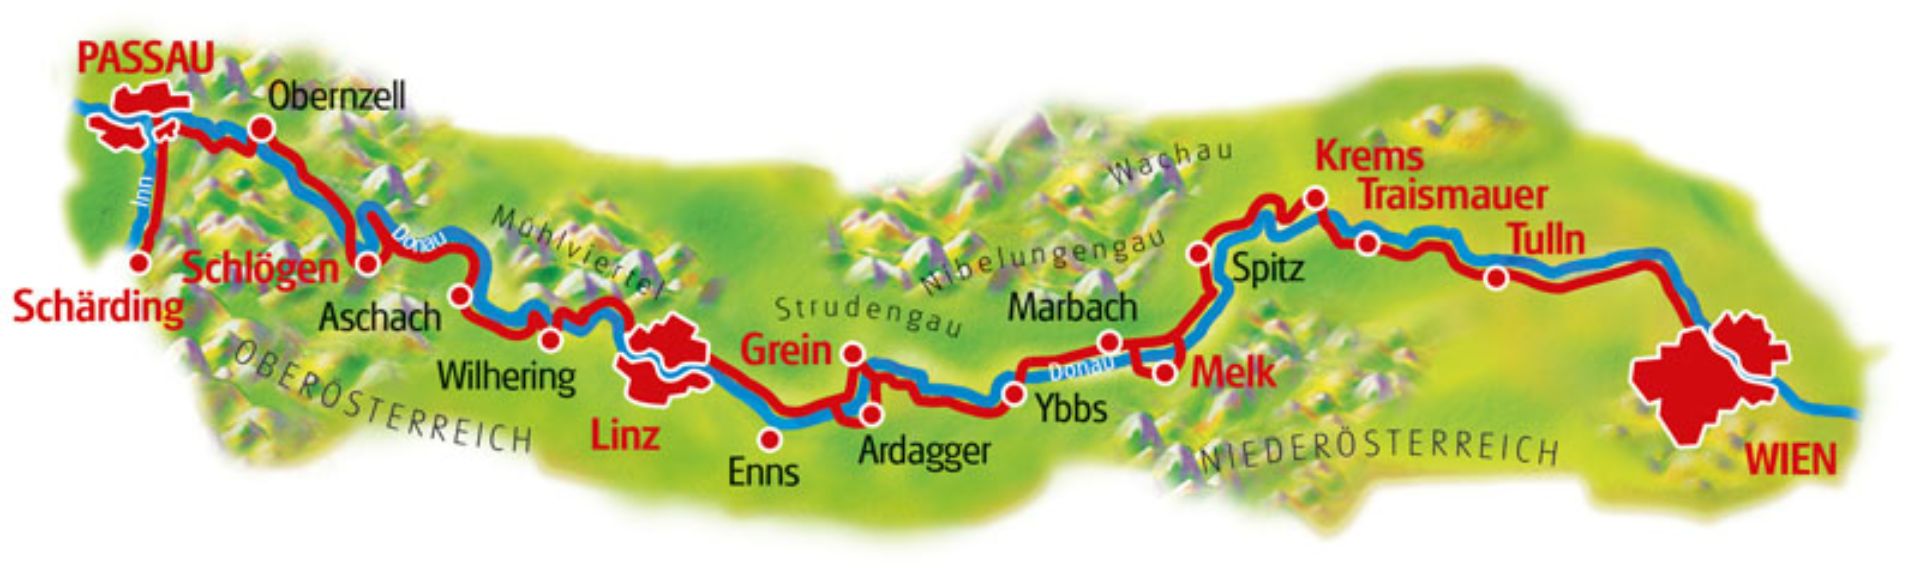 ルートマップ オーストリア ドナウサイクルパス9泊10日